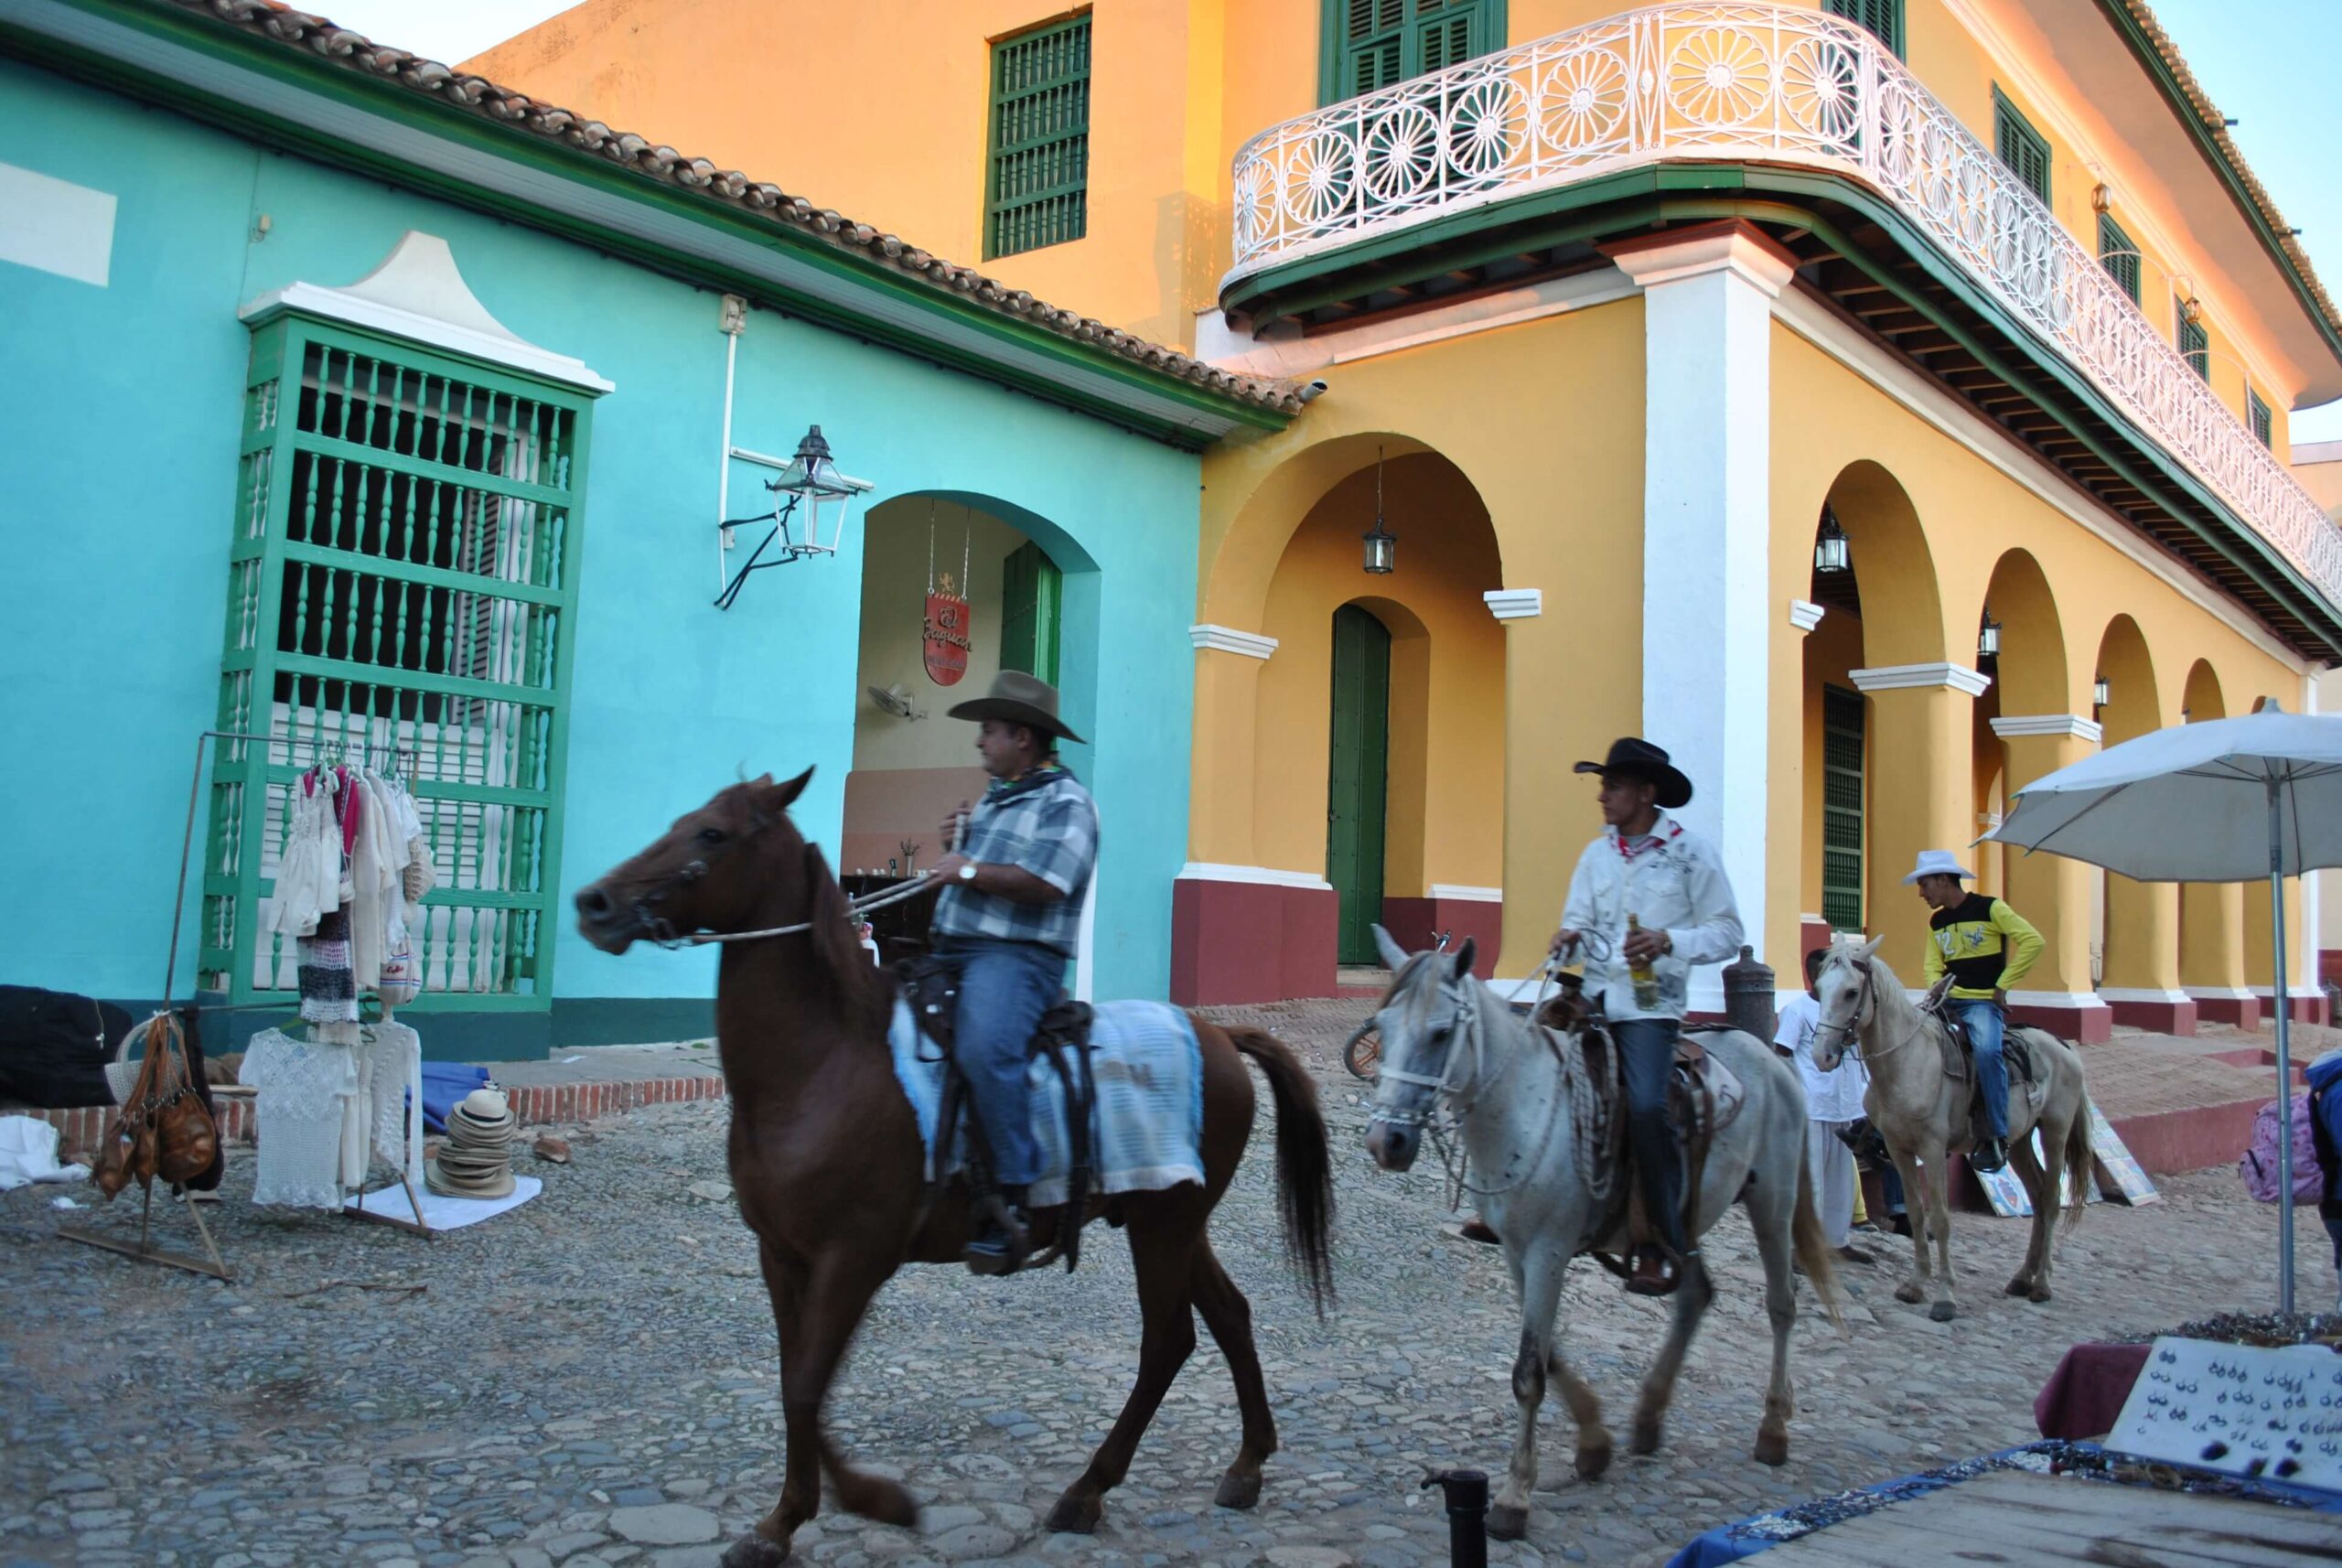 Trynidad – miasteczko pełne niskich, kolorowych domków i brukowanych uliczek, którymi co jakiś czas przejeżdżają konno kubańscy campesinos w charakterystycznych kowbojskich kapeluszach.